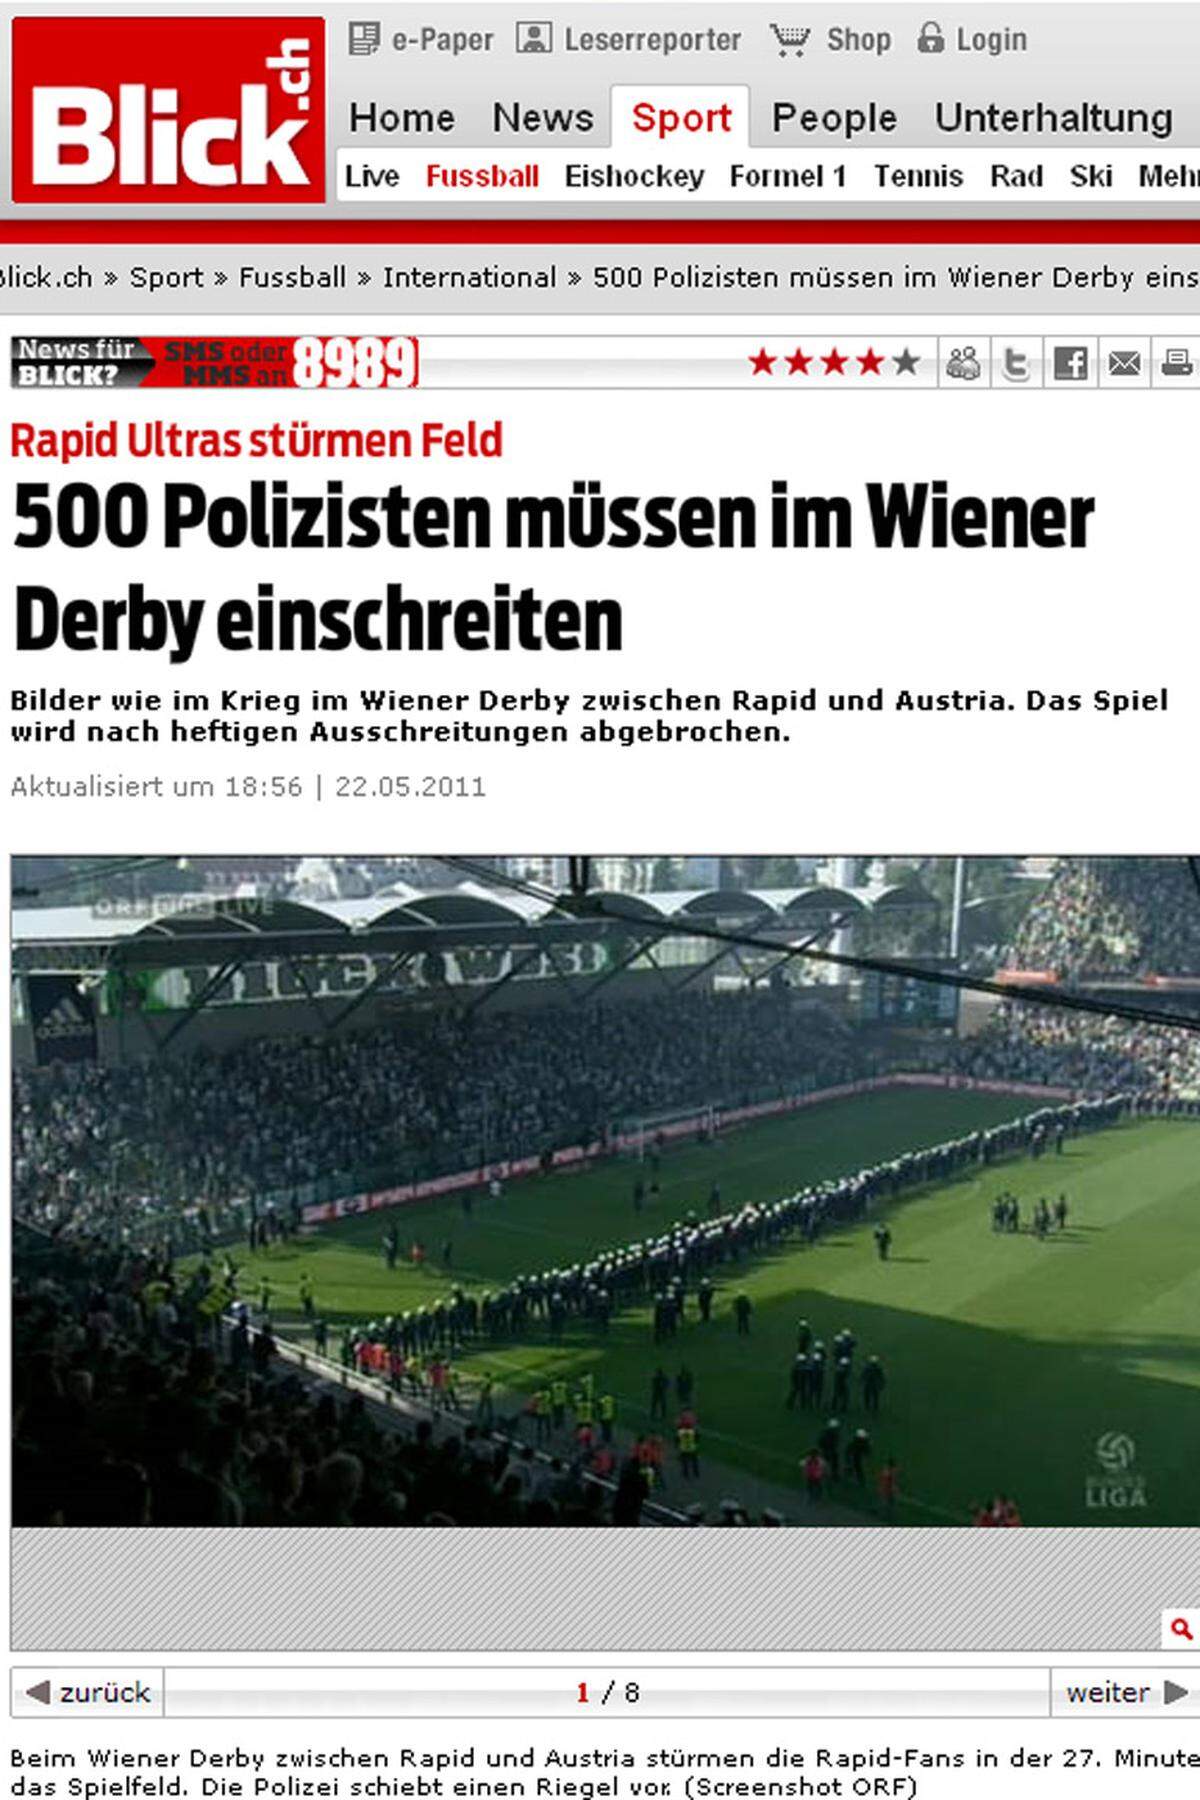 "Bilder wie im Krieg im Wiener Derby zwischen Rapid und Austria. Das Spiel wurde nach heftigen Ausschreitungen abgebrochen. 500 Polizisten mussten einschreiten." Blick.ch